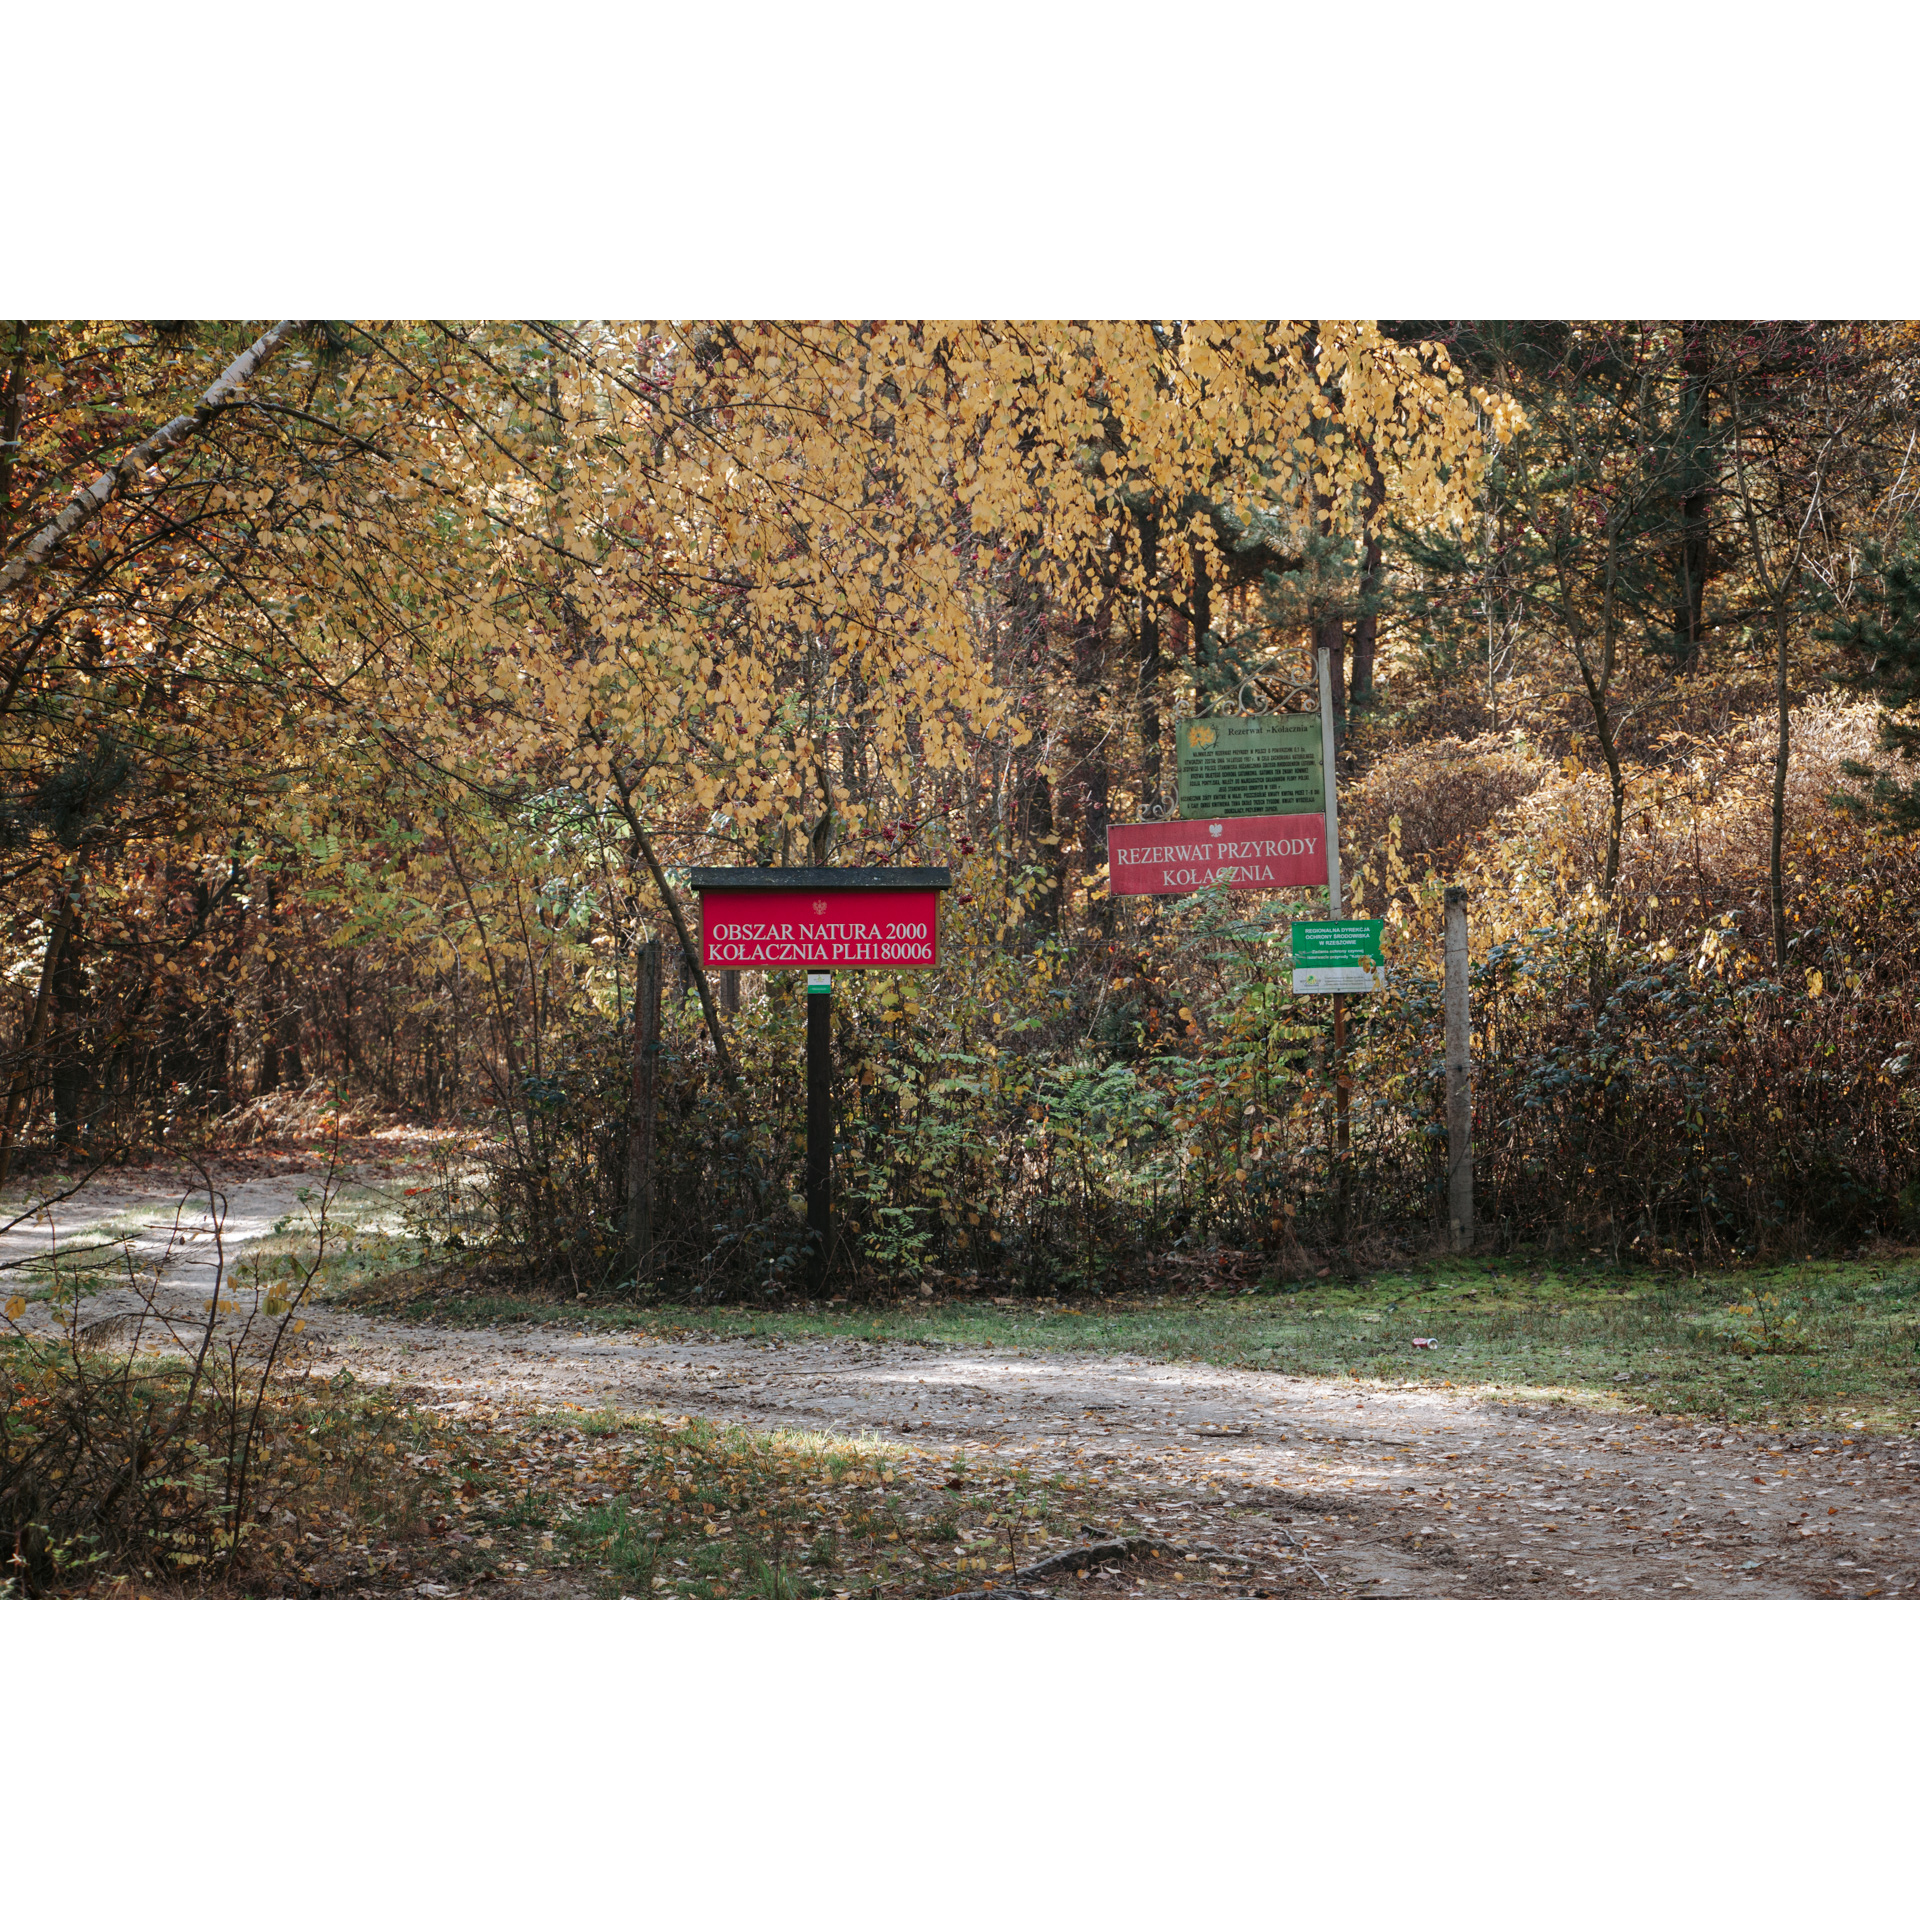 Czerwone i zielone tabliczki informacyjne stojące przy leśnej drodze na tle żółtych liści drzew